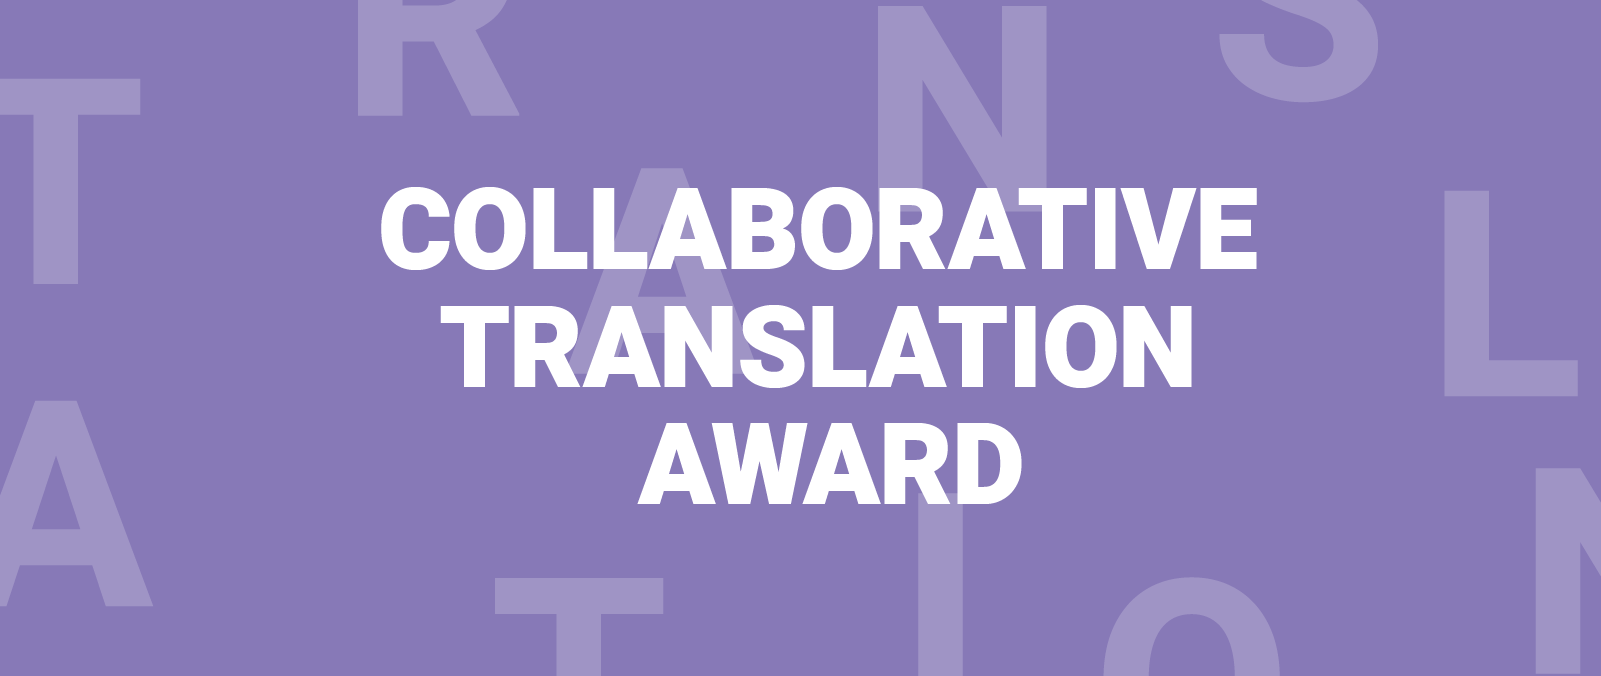 Collaborative Translation Award